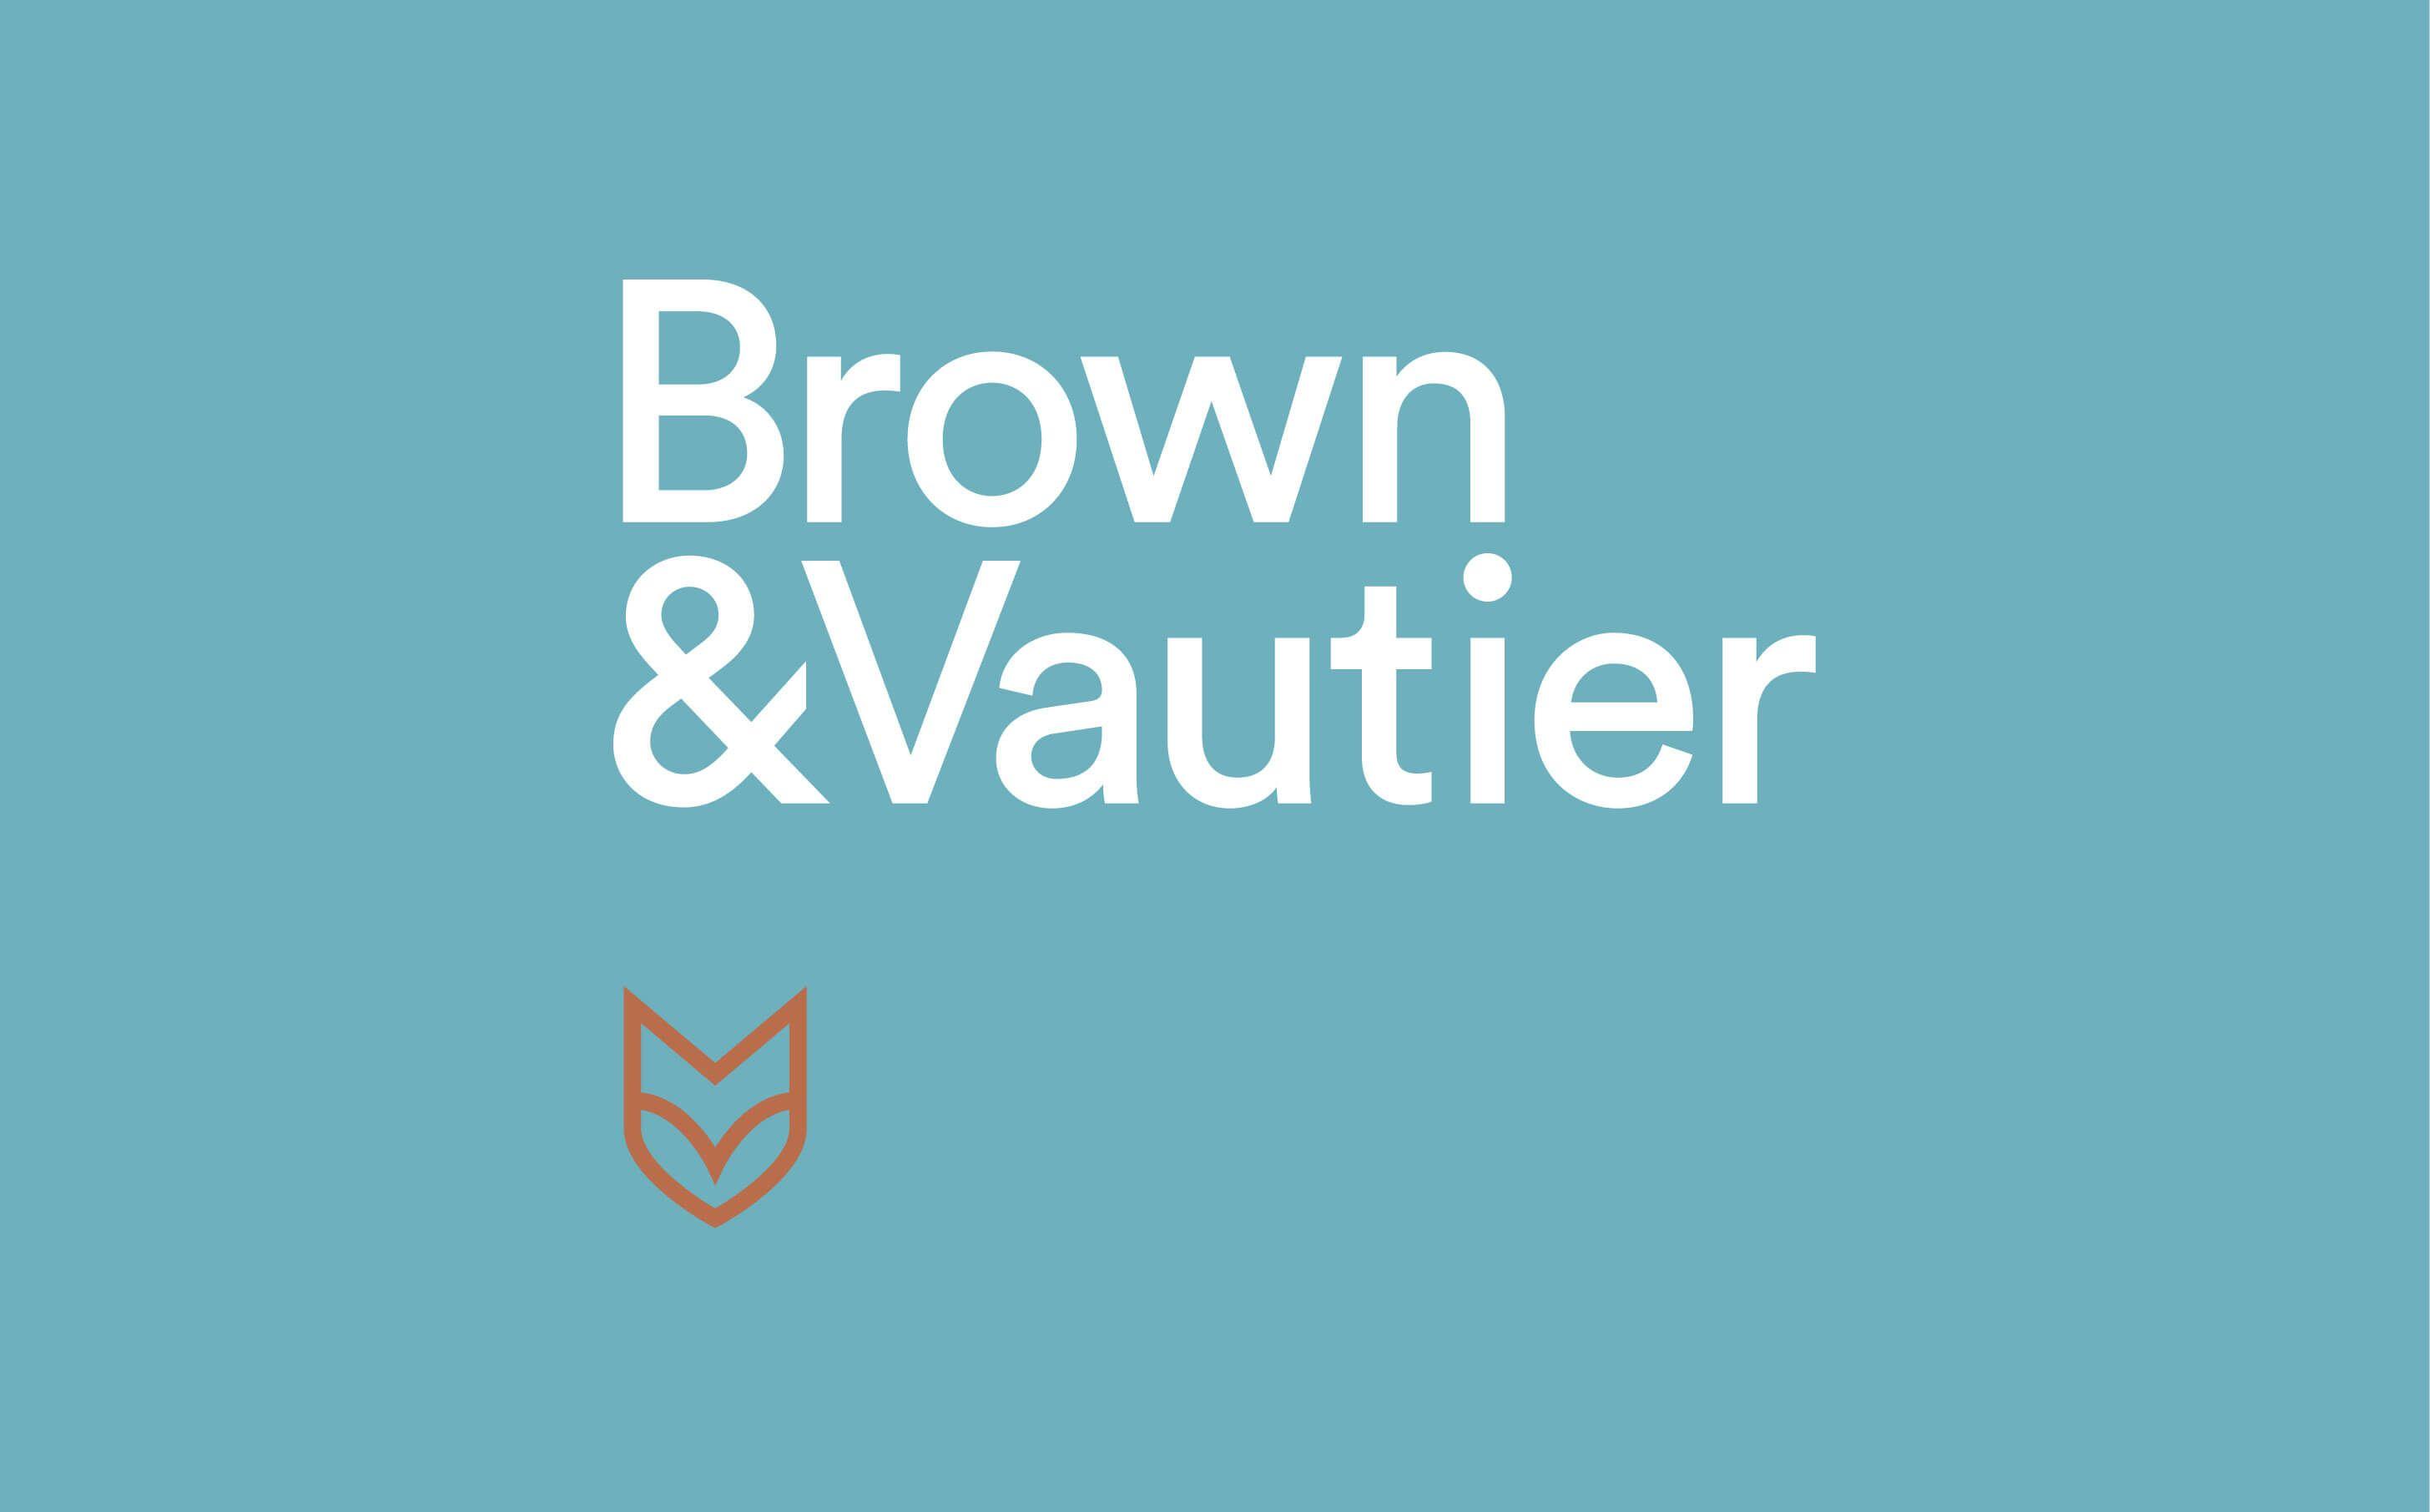 Brown and Blue Logo - Sven Zijderveld › Brown & Vautier